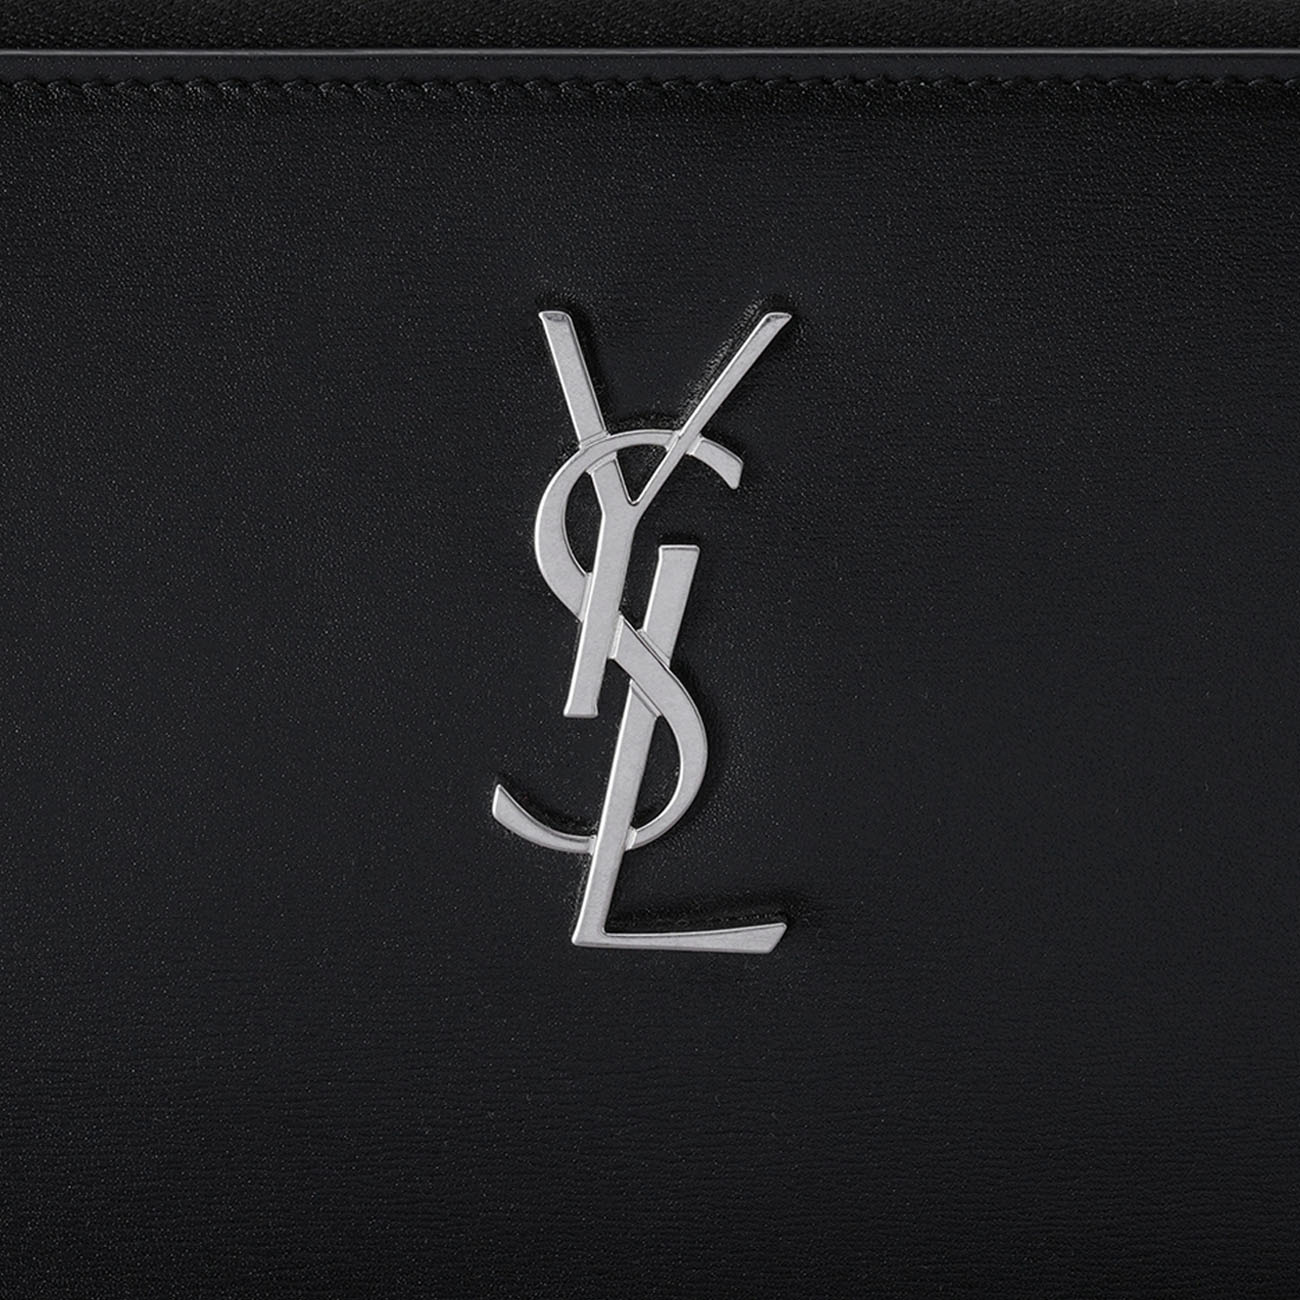 Yves Saint Laurent(USED)생로랑 667686 모노그램 클러치 블랙